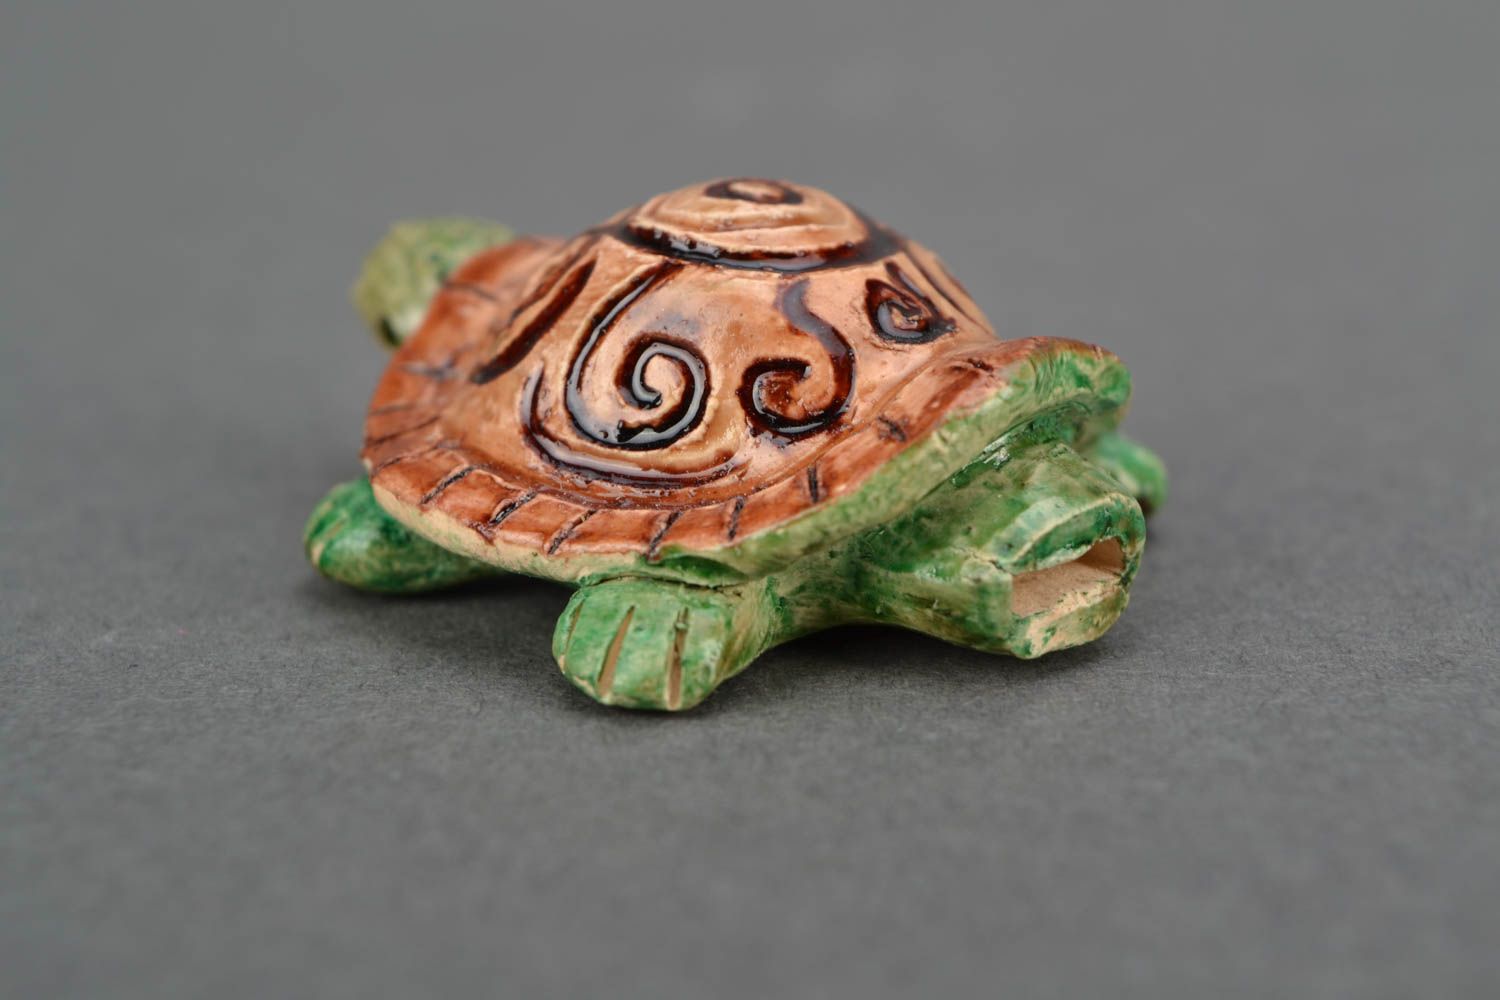 Sifflet instrument de musique en forme de tortue miniature peint original photo 5